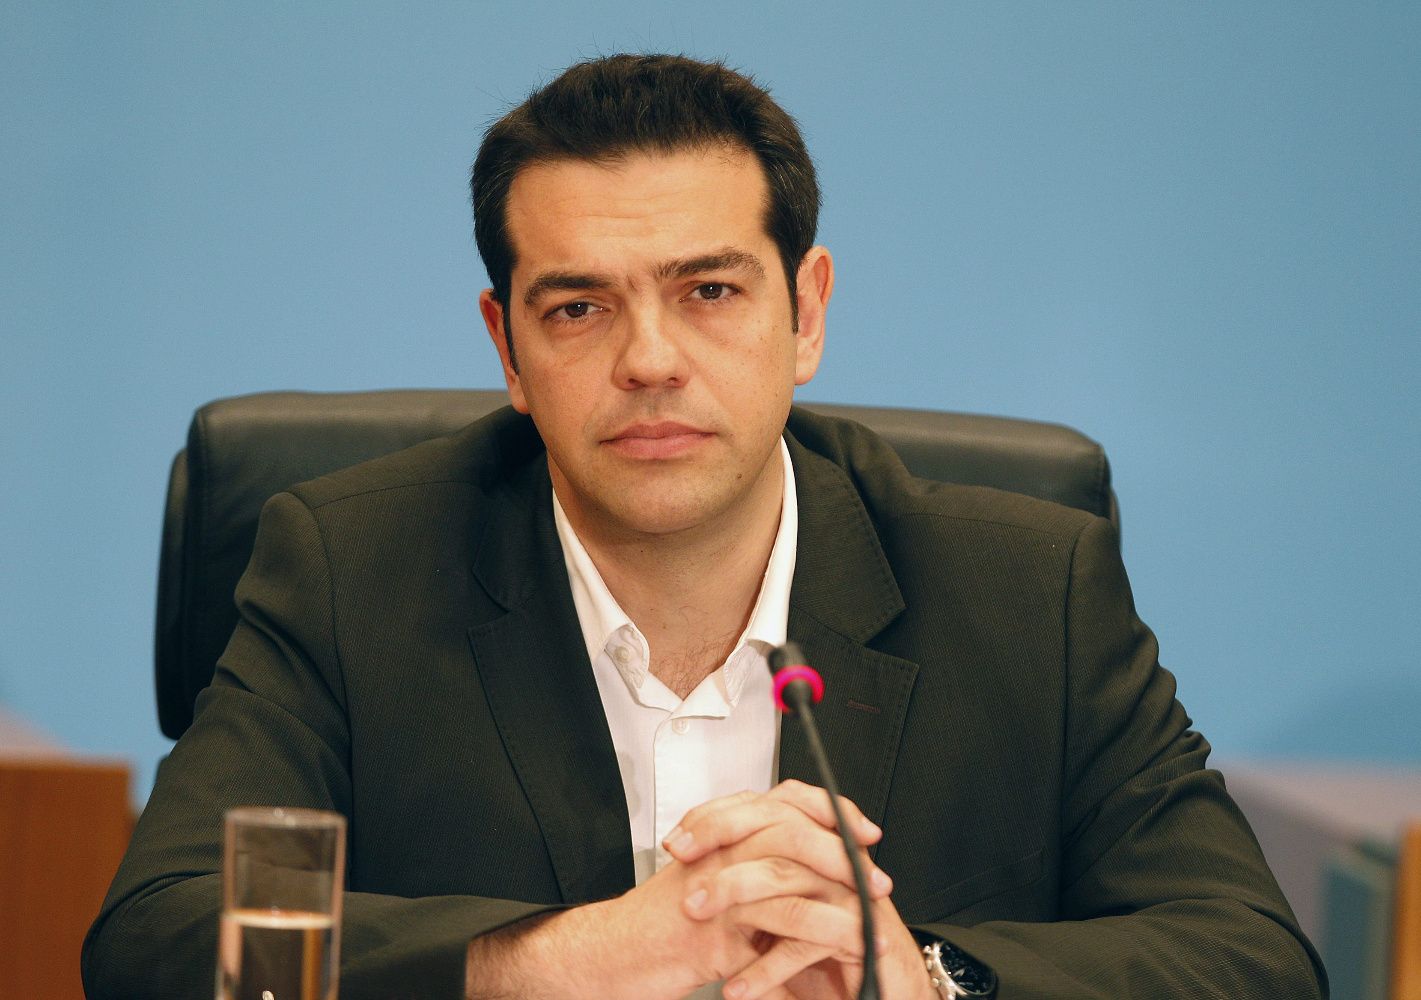 ΣΥΡΙΖΑ: Ο Τσίπρας δεν θα παραβρεθεί στην τελετή έναρξης της Ελληνικής Προεδρίας